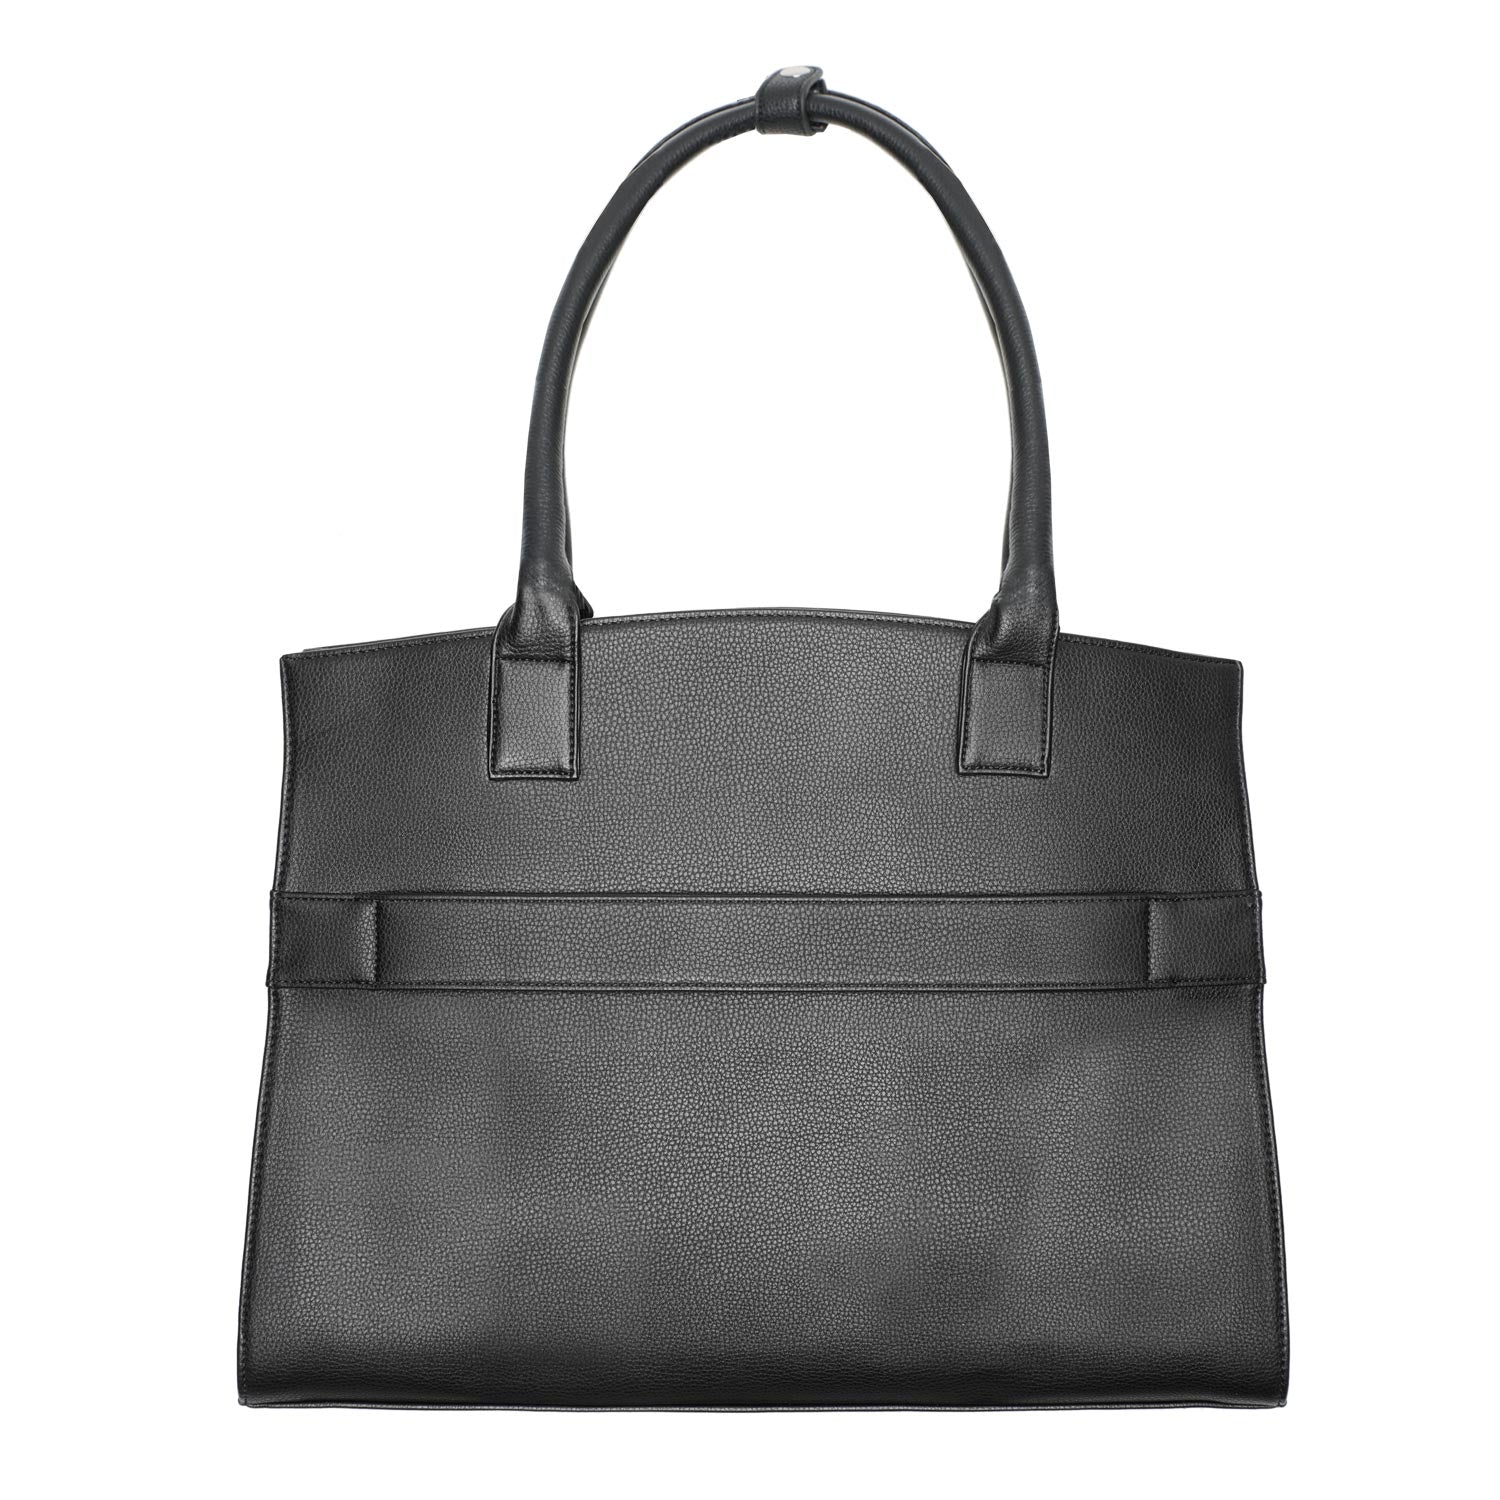 Socha iconic zwart 15.6 inch werktas voor dames achterkant tas